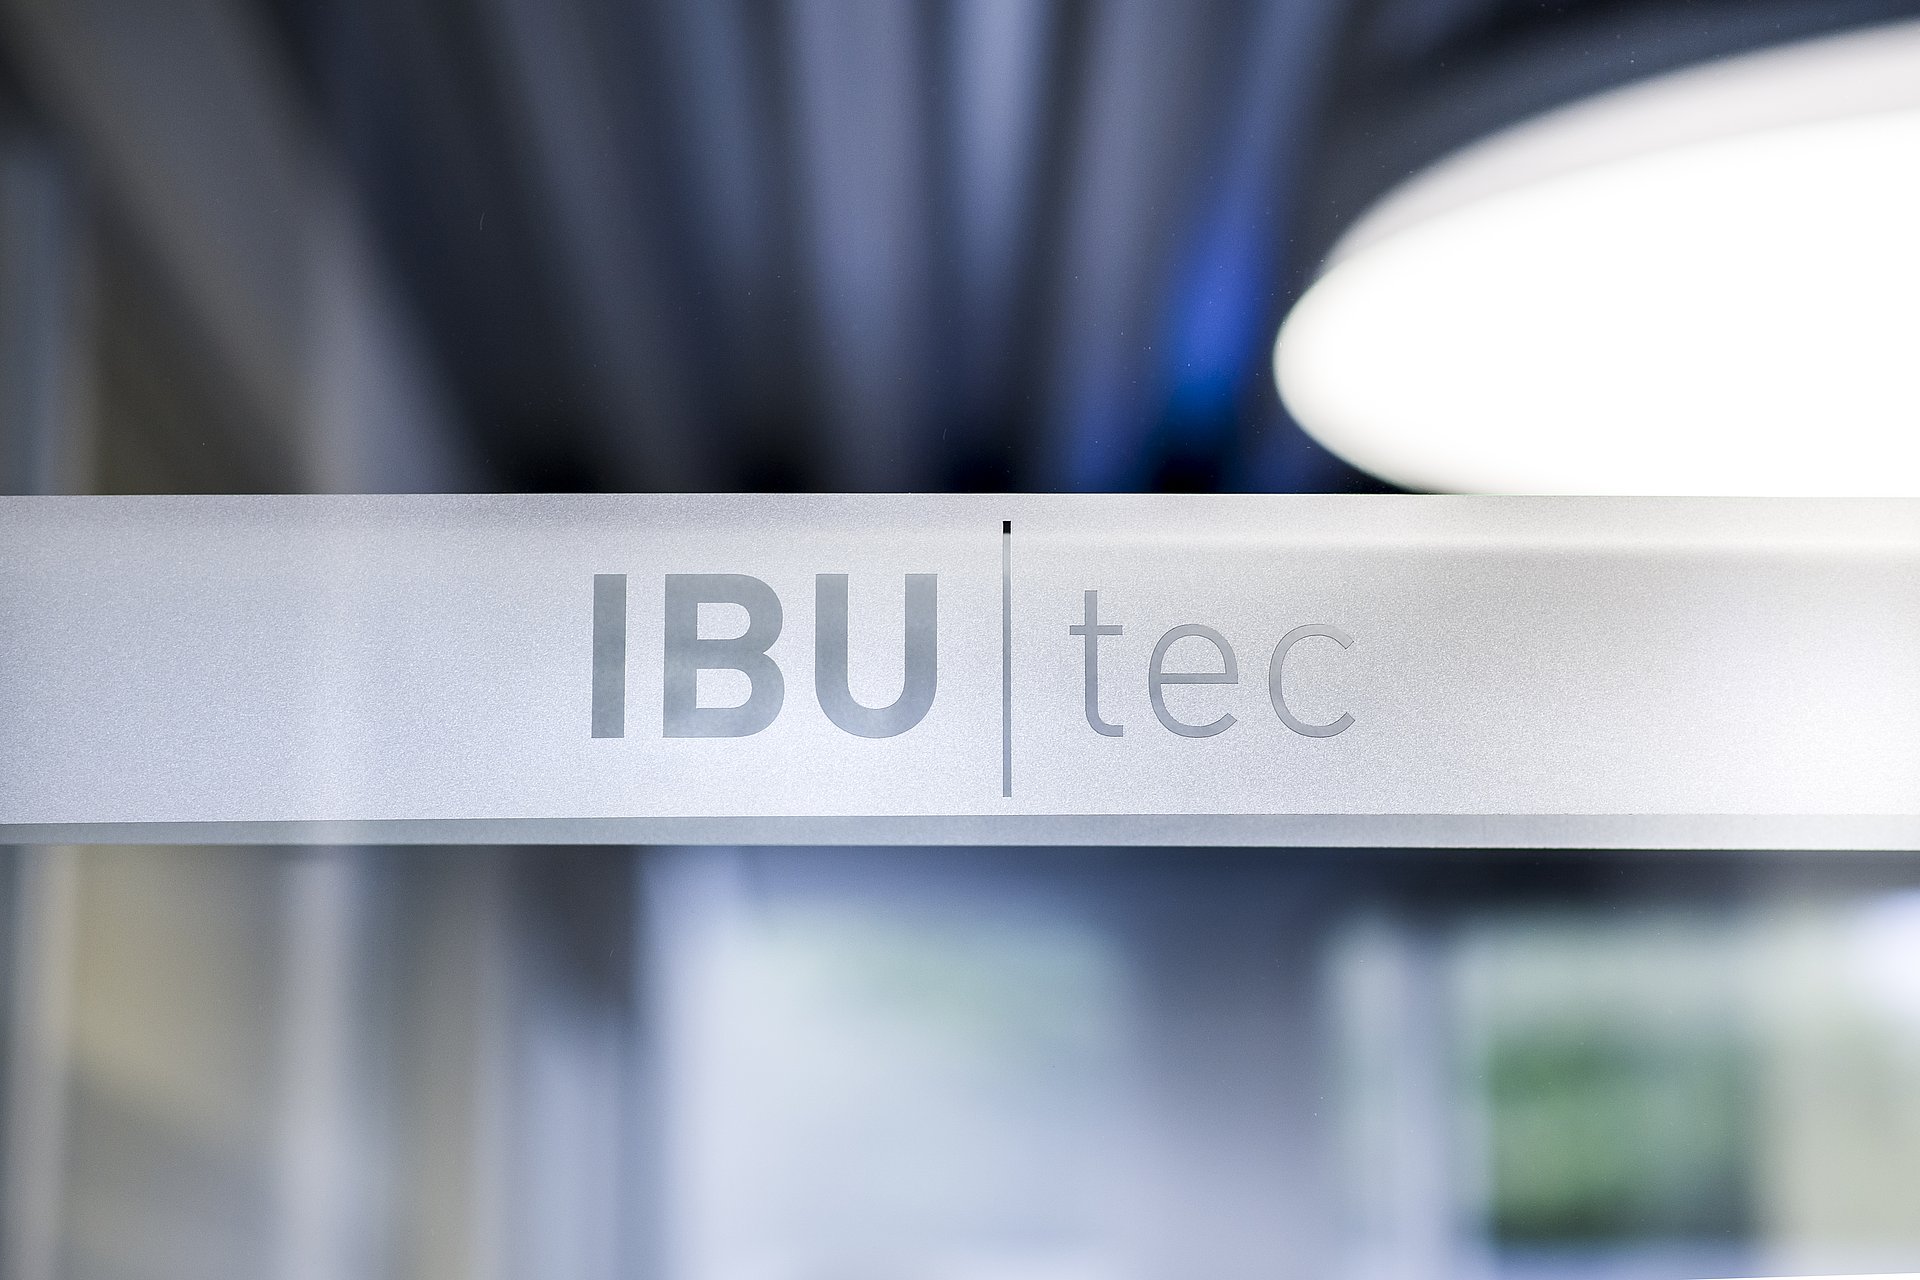 Logo IBU-tec avec des lumières floues artistiques en arrière-plan: bleu, gris et blanc